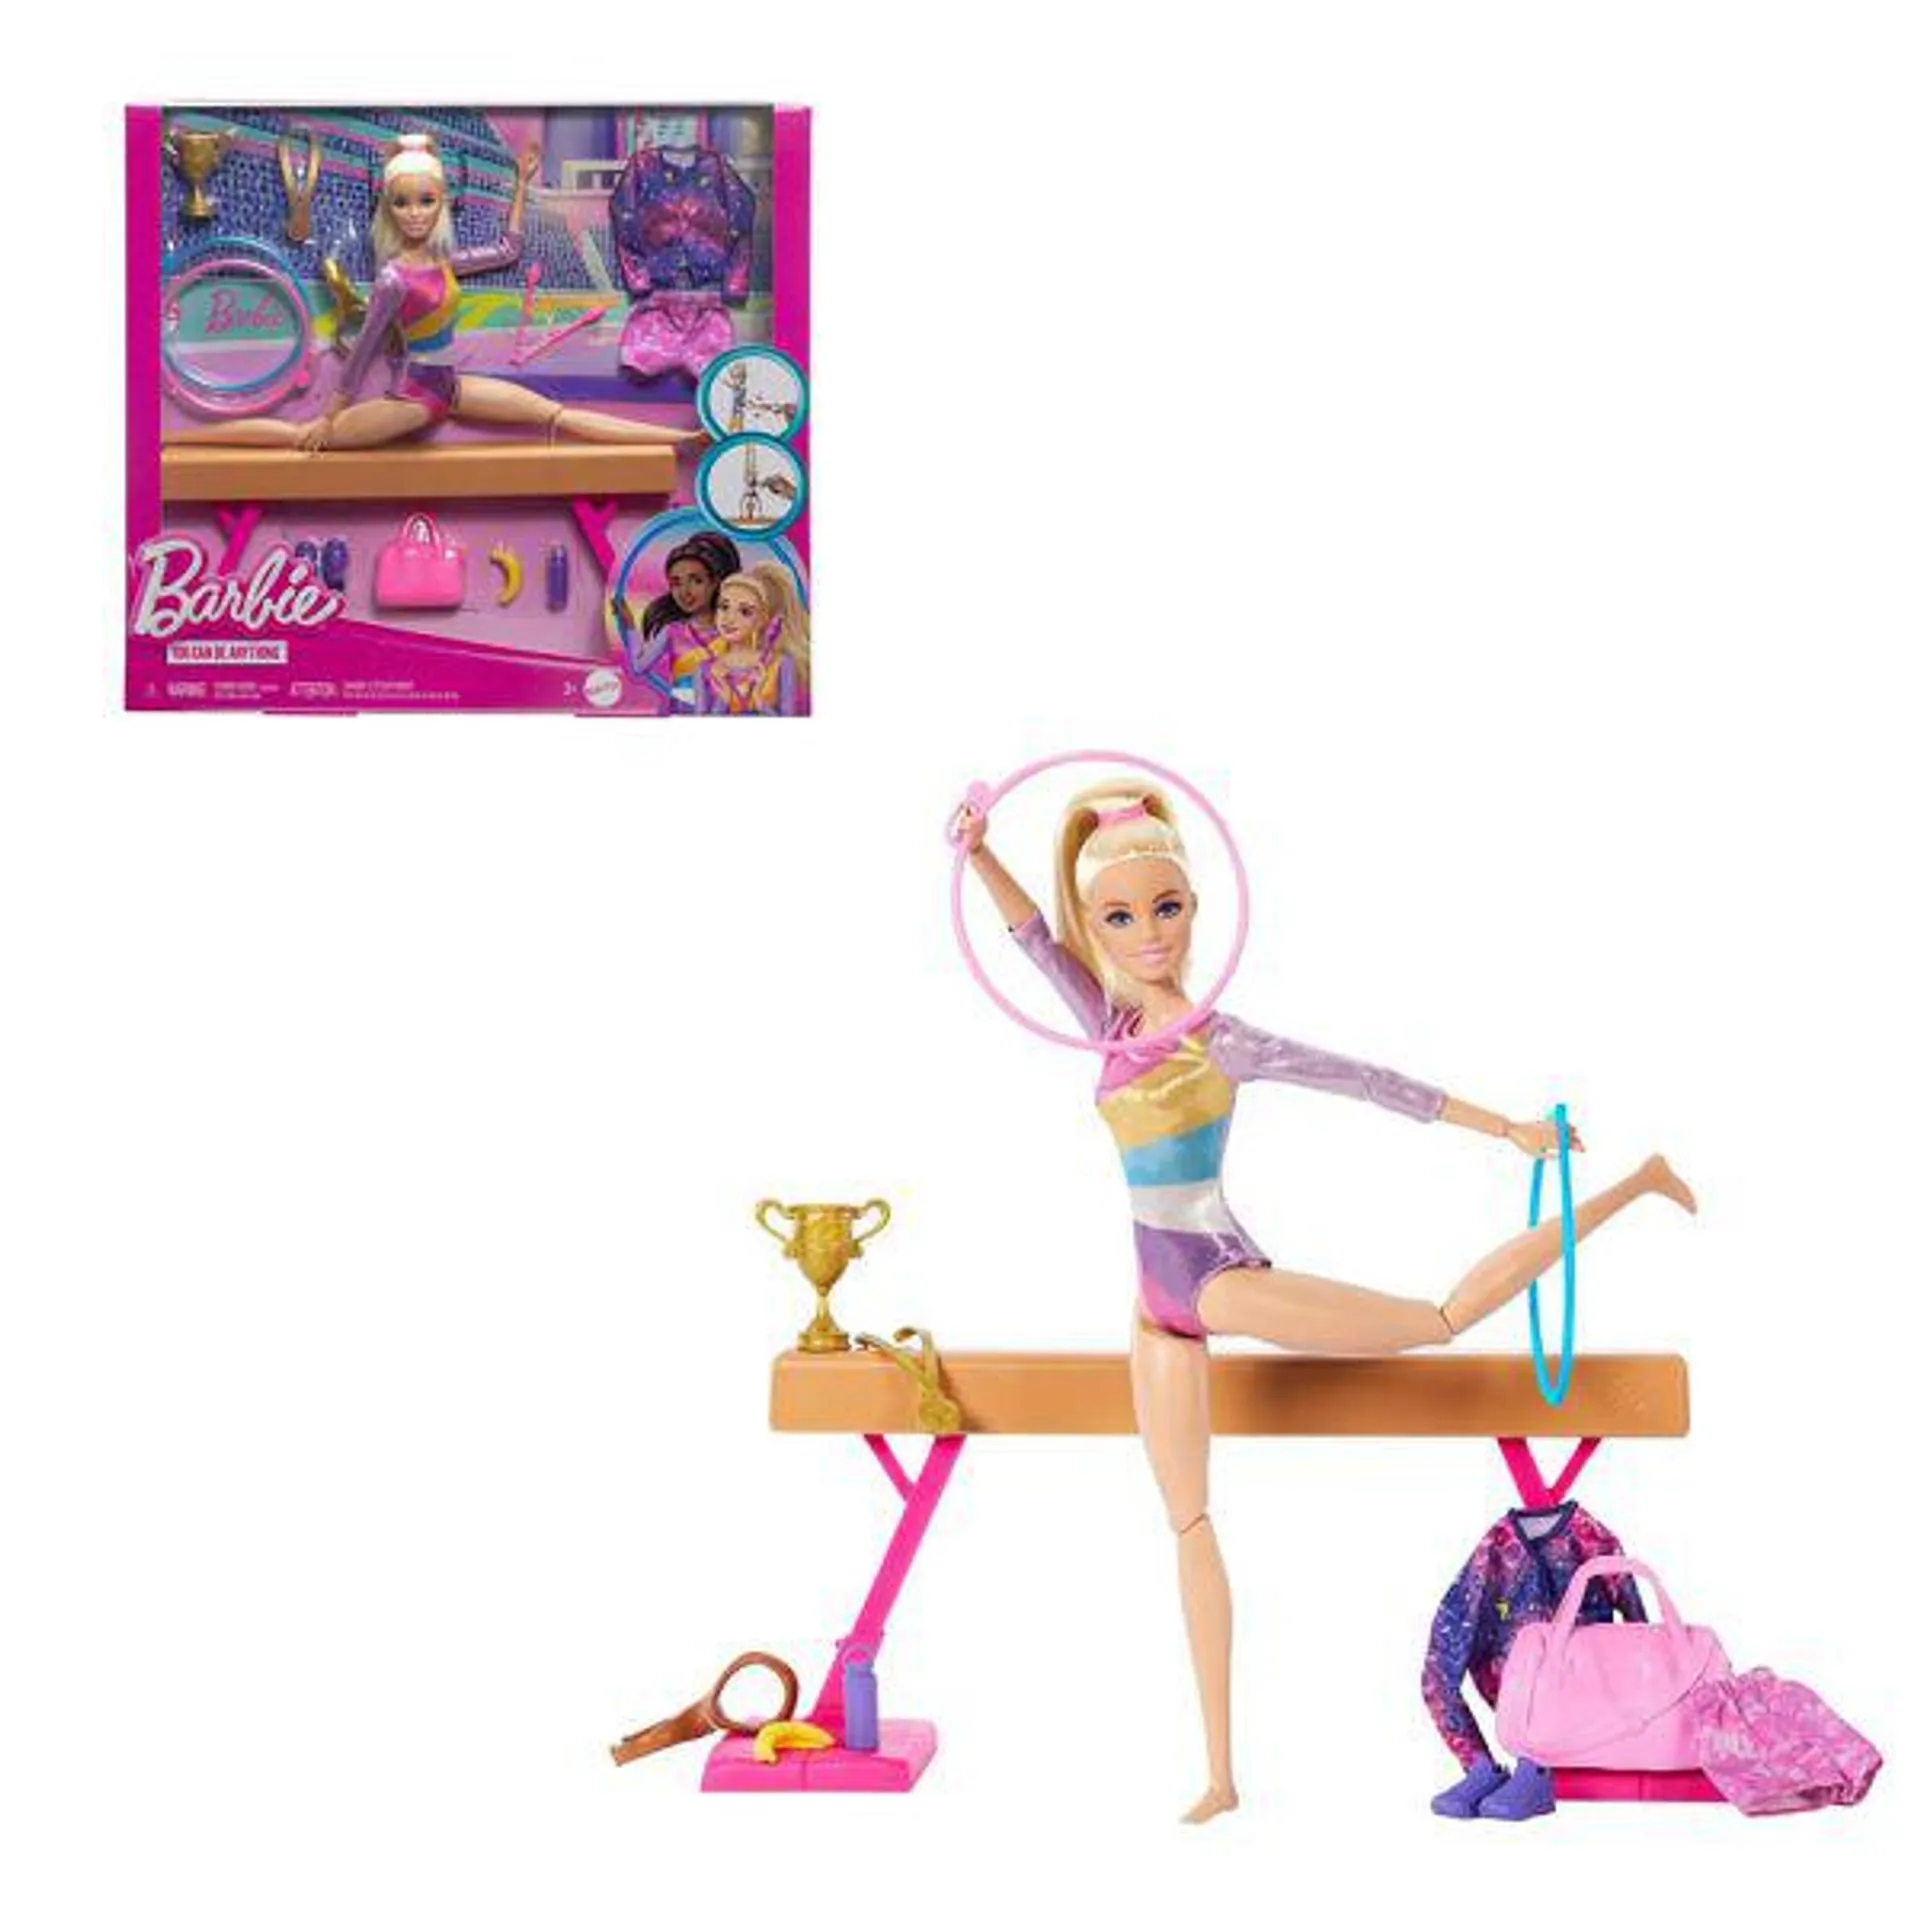 Bambola Barbie ginnasta - Mattel